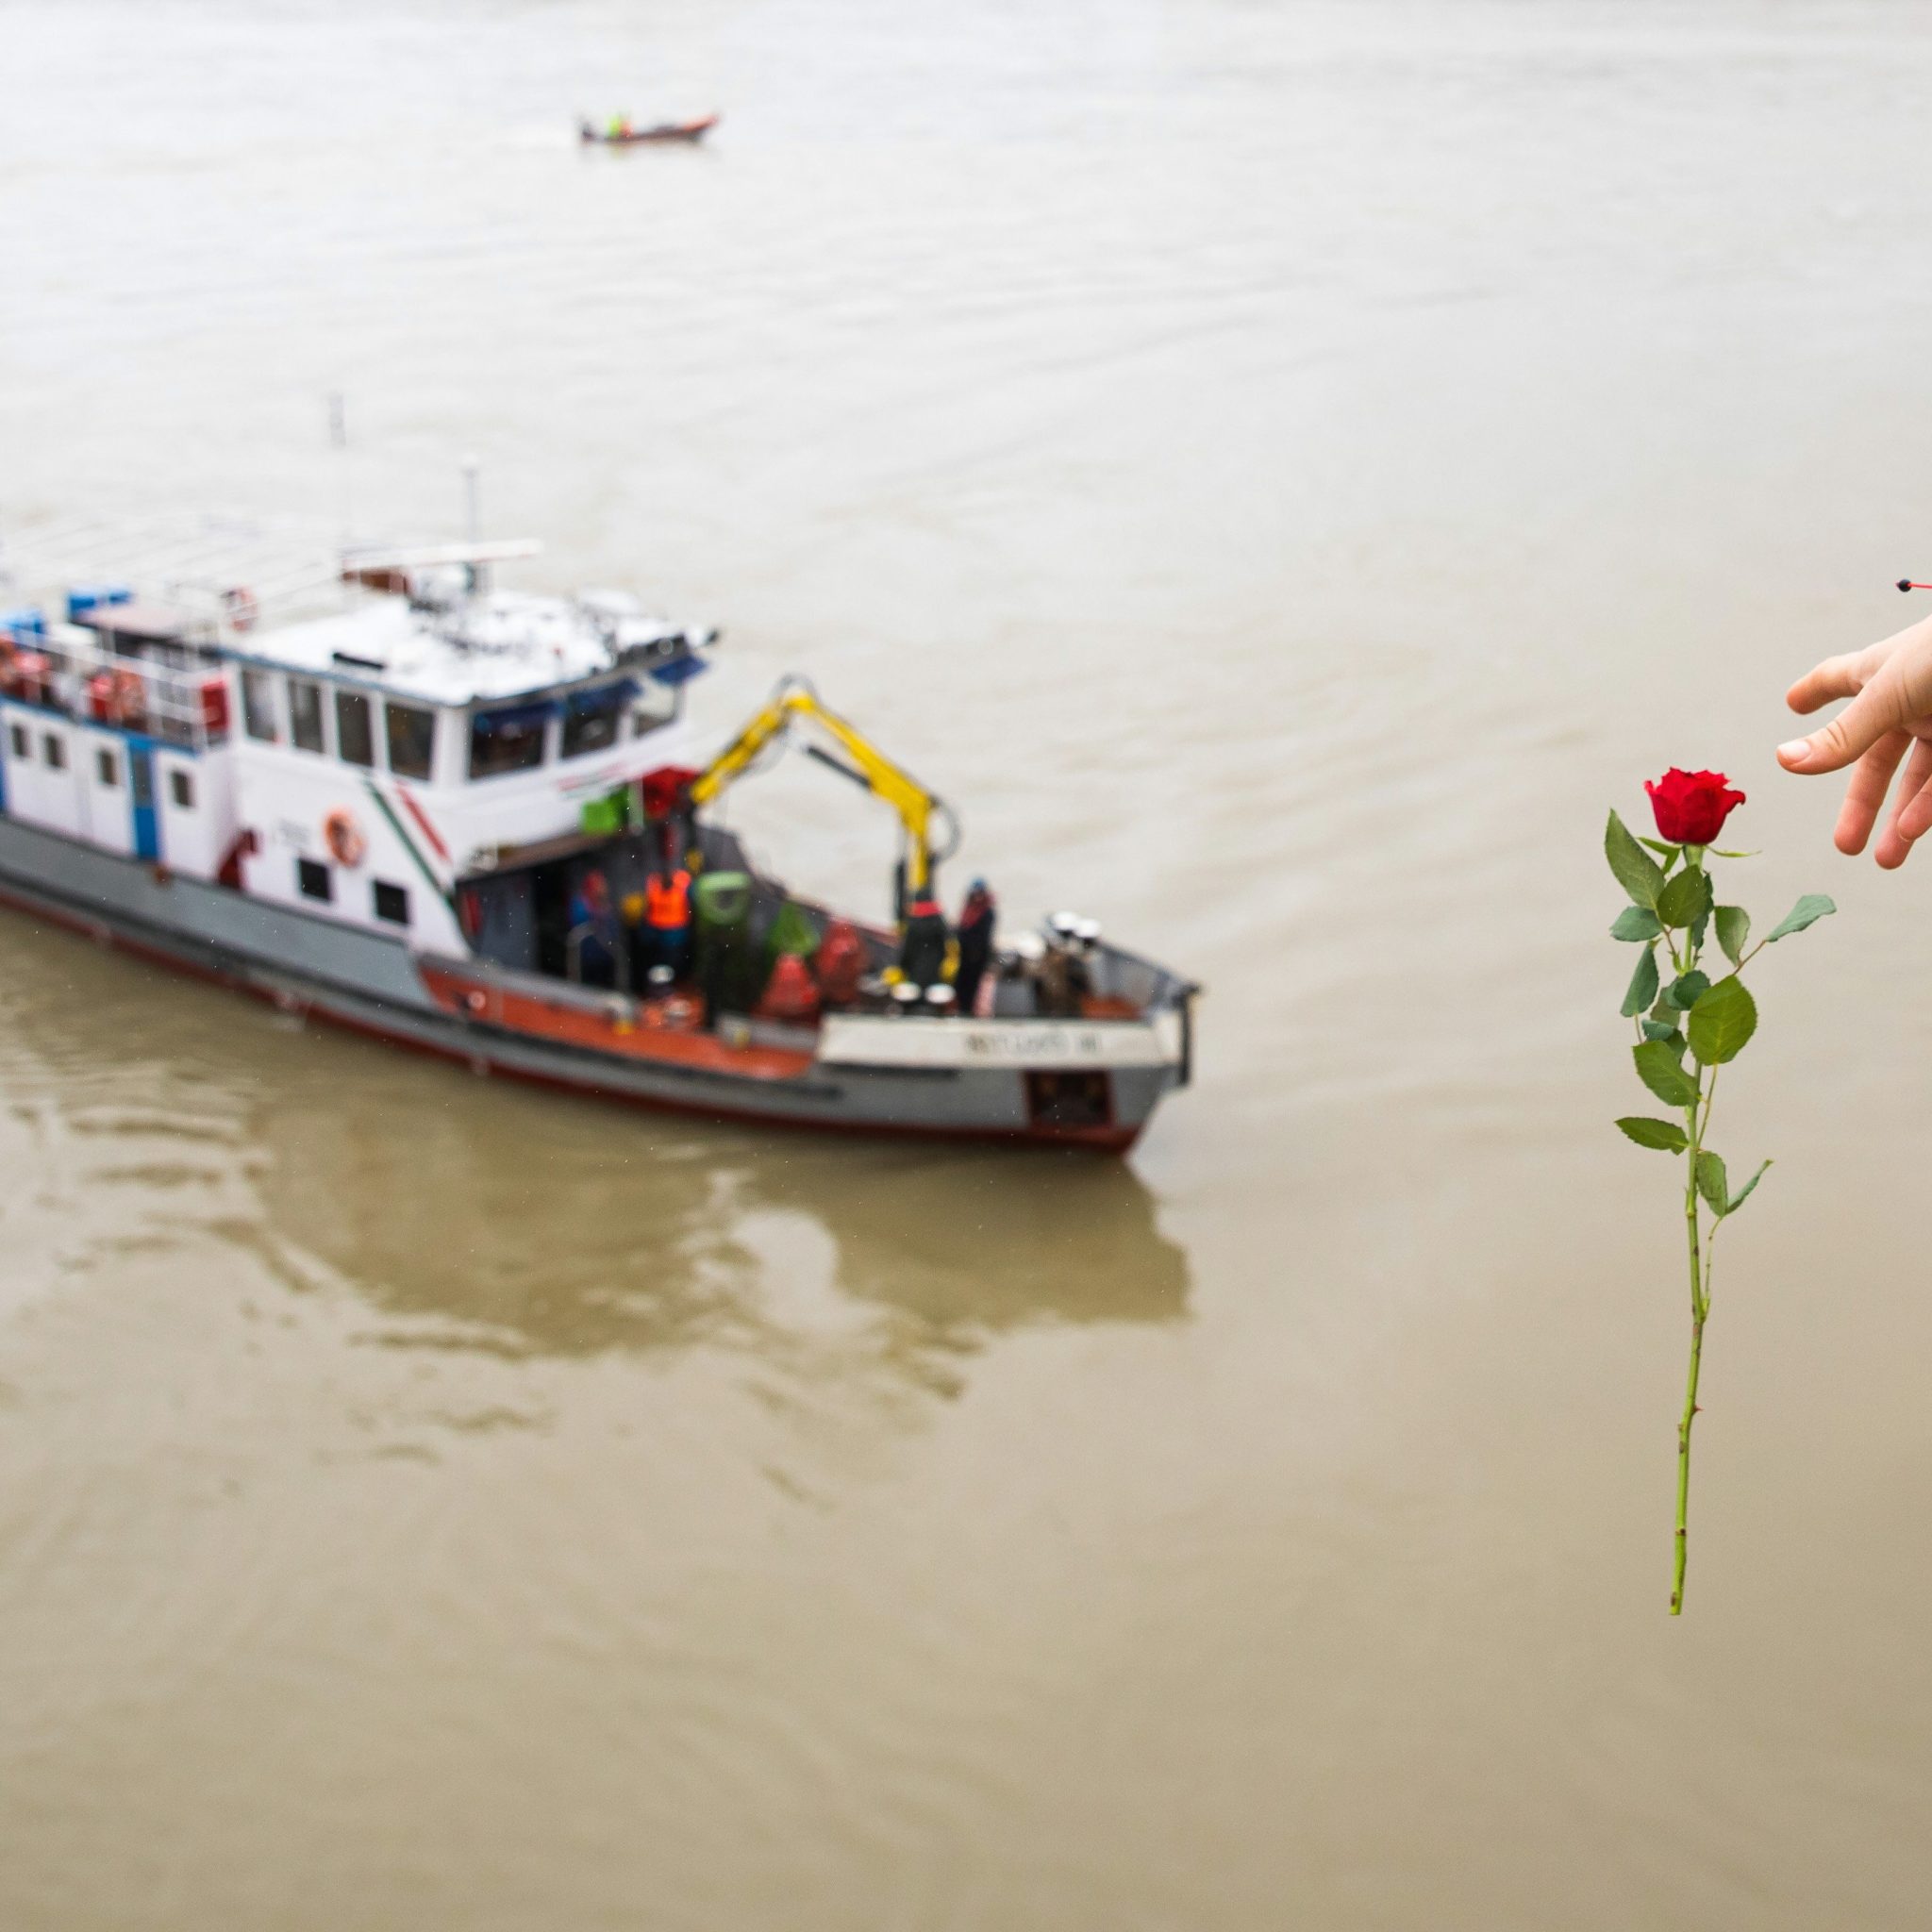 Bij de Margitbrug laat een vrouw een roos in de Donau vallen, waar vermoedelijk 18 opvarenden van een rondvaartboot om het leven kwamen. (Foto EPA/Balazs Mohai)